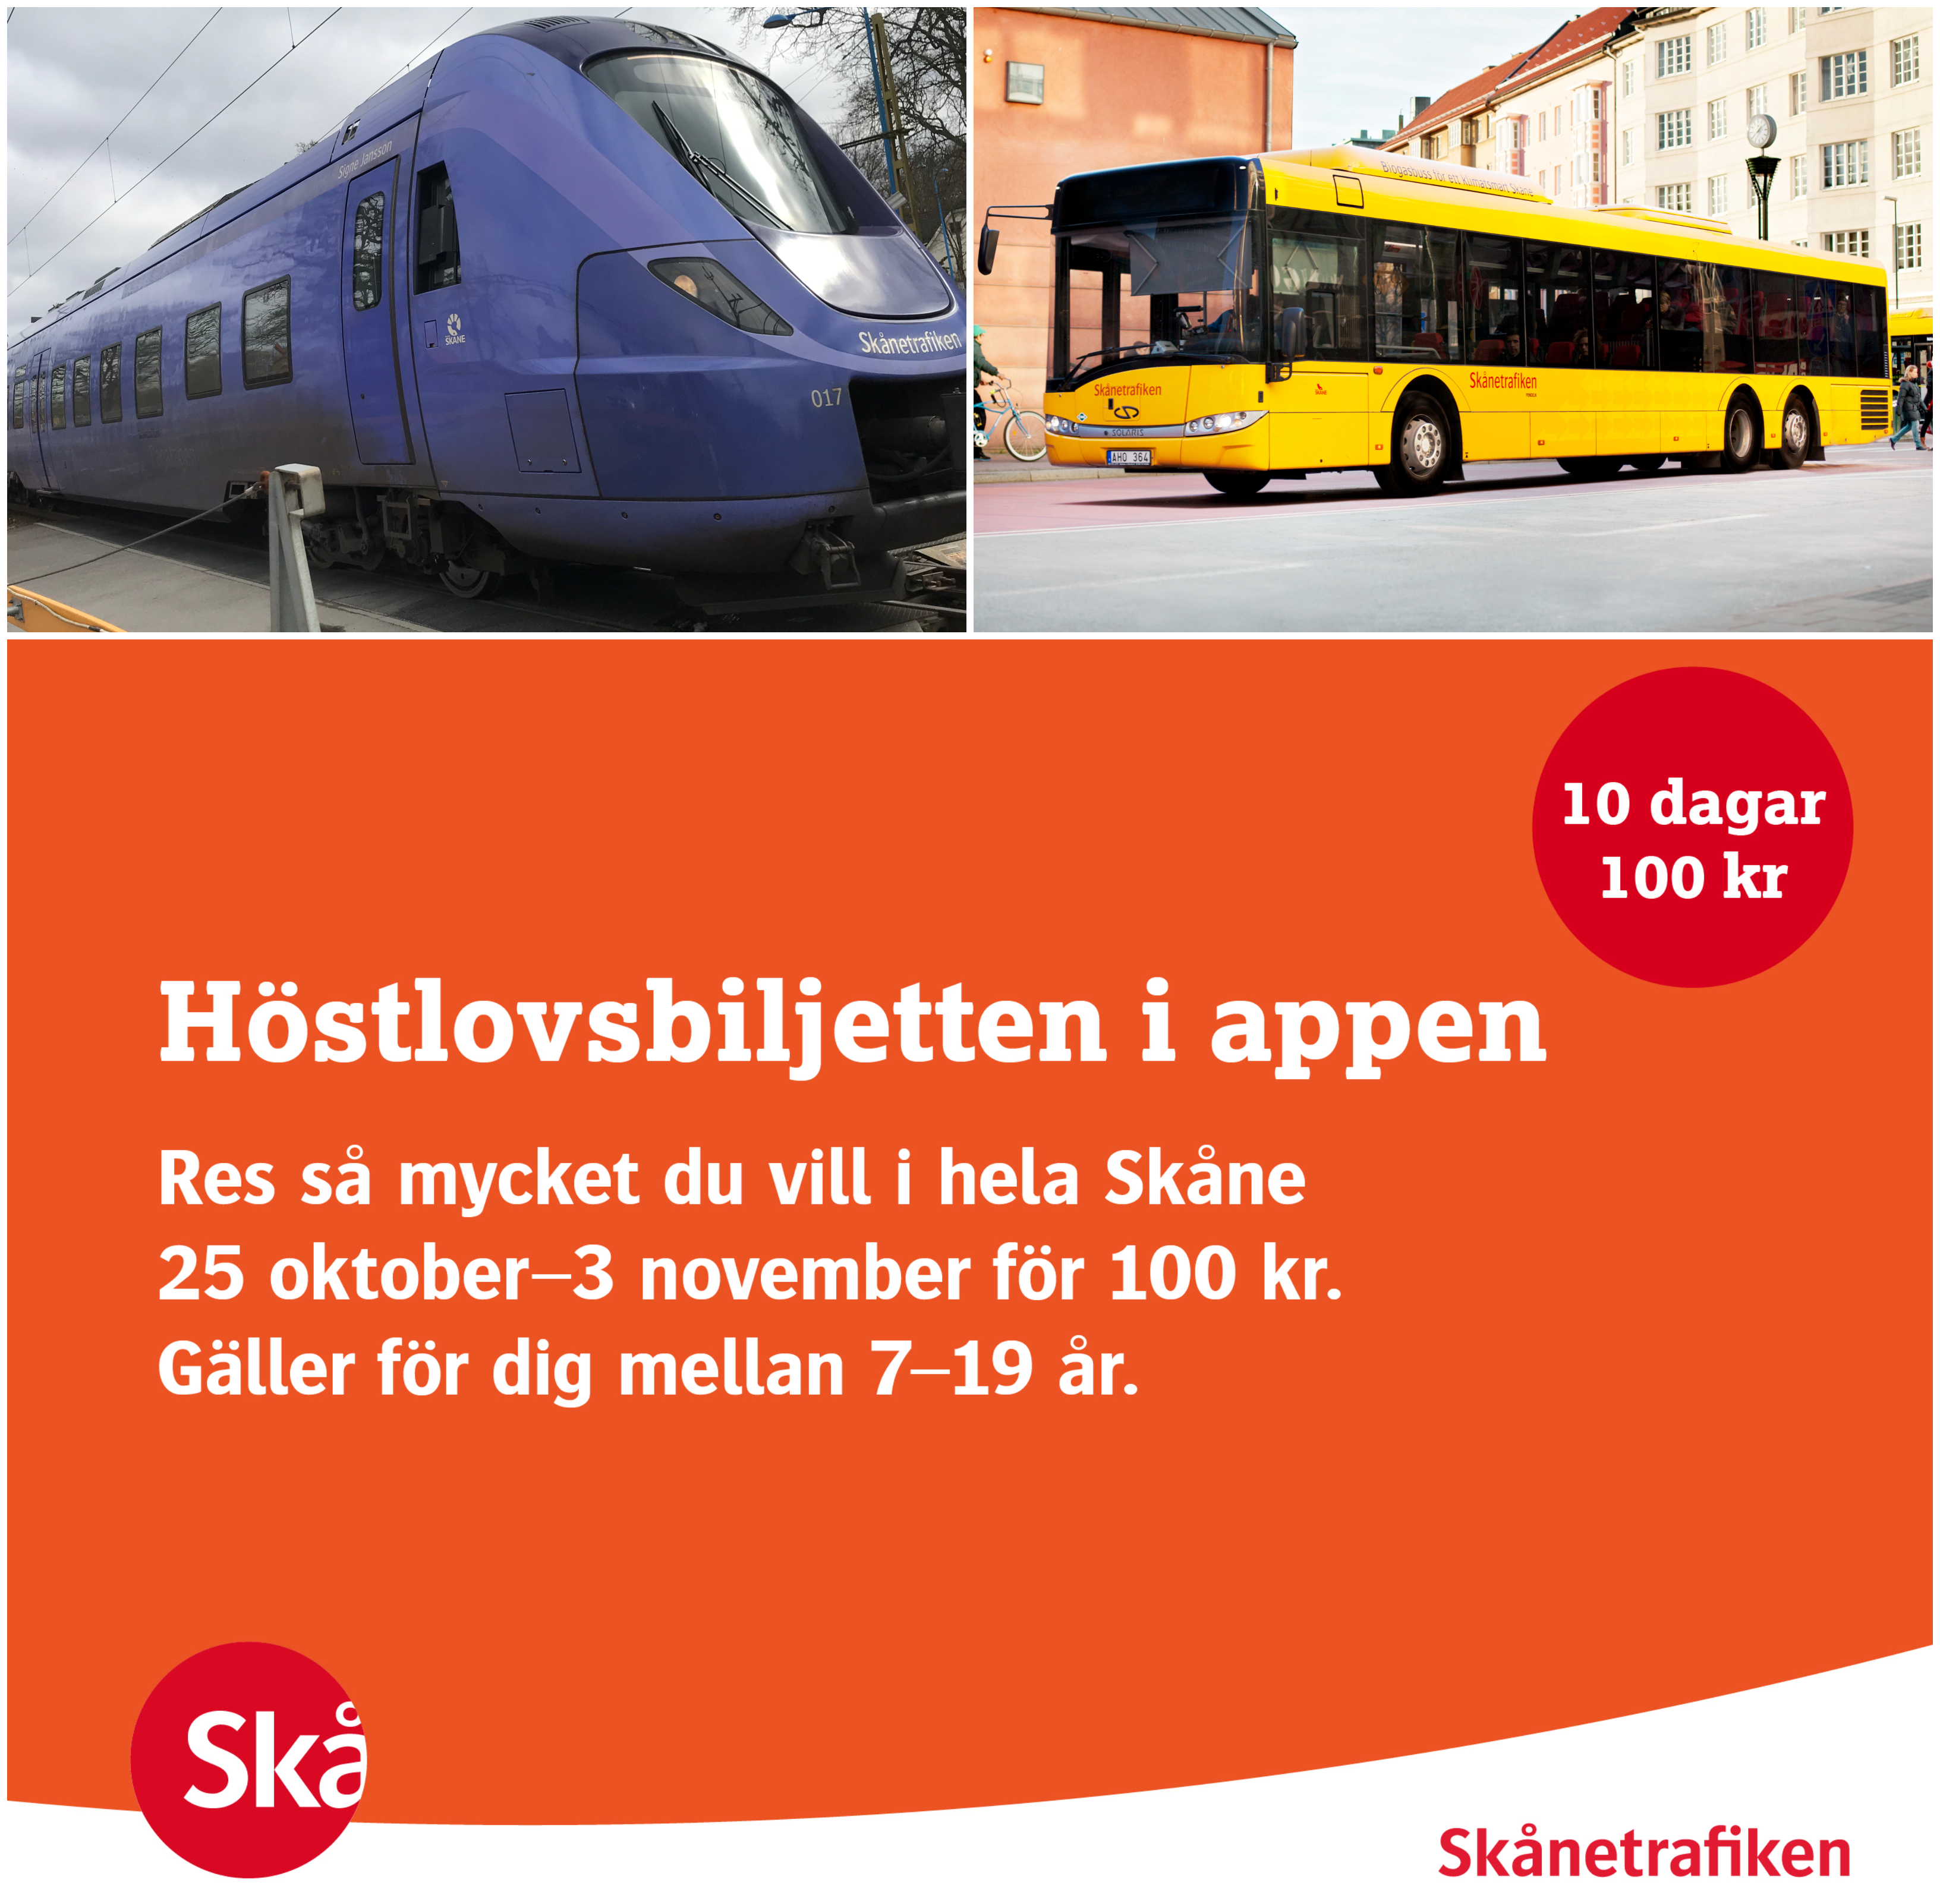 Skånetrafiken erbjuder även hösten 2019 en höstlovsbiljett för ungdomar 7-19 år.